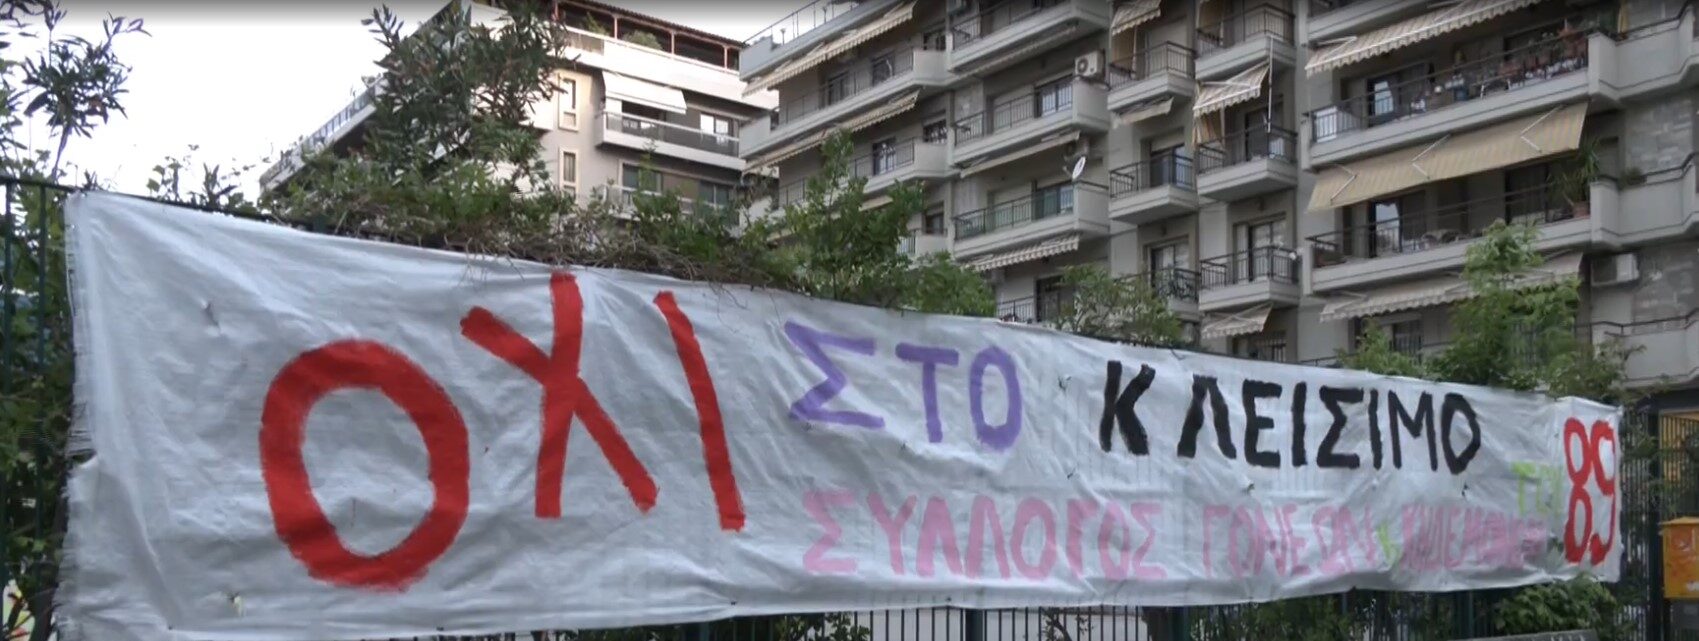 Διαμαρτυρία μαθητών και γονέων για να μην κλείσει δημοτικό σχολείο στη Θεσσαλονίκη